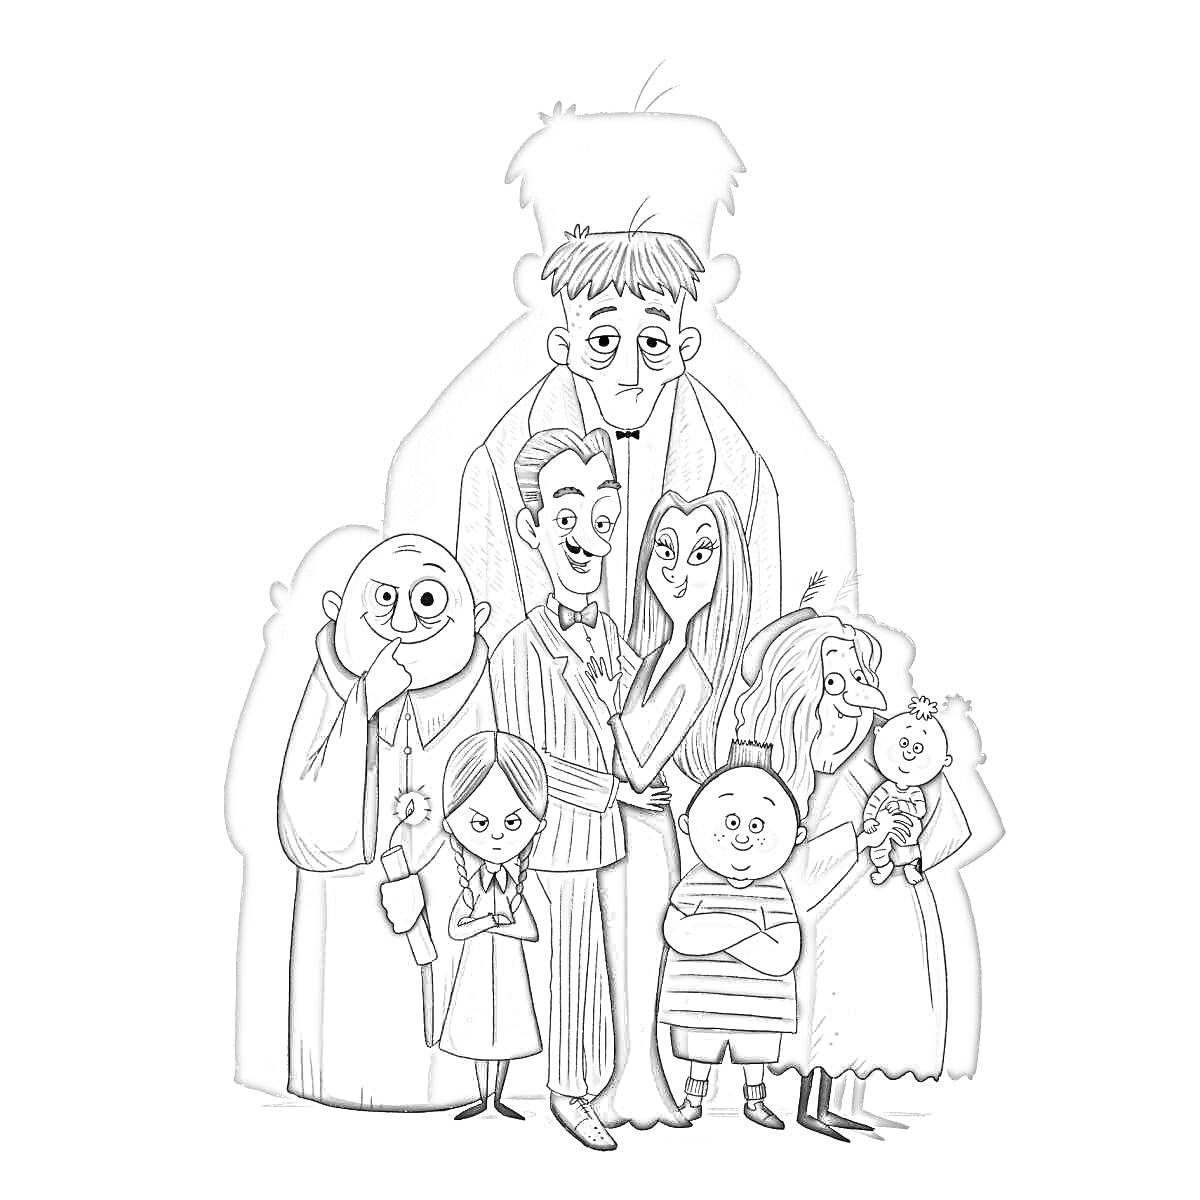 Раскраска Семья, стоящая на фоне большого мужчины в тени, включая мужчину в полосатом костюме, женщину с длинными волосами, лысого мужчины, девочку в полосатом платье с косичками, мальчика в полоске и женщину с длинными волосами и куклой в руках